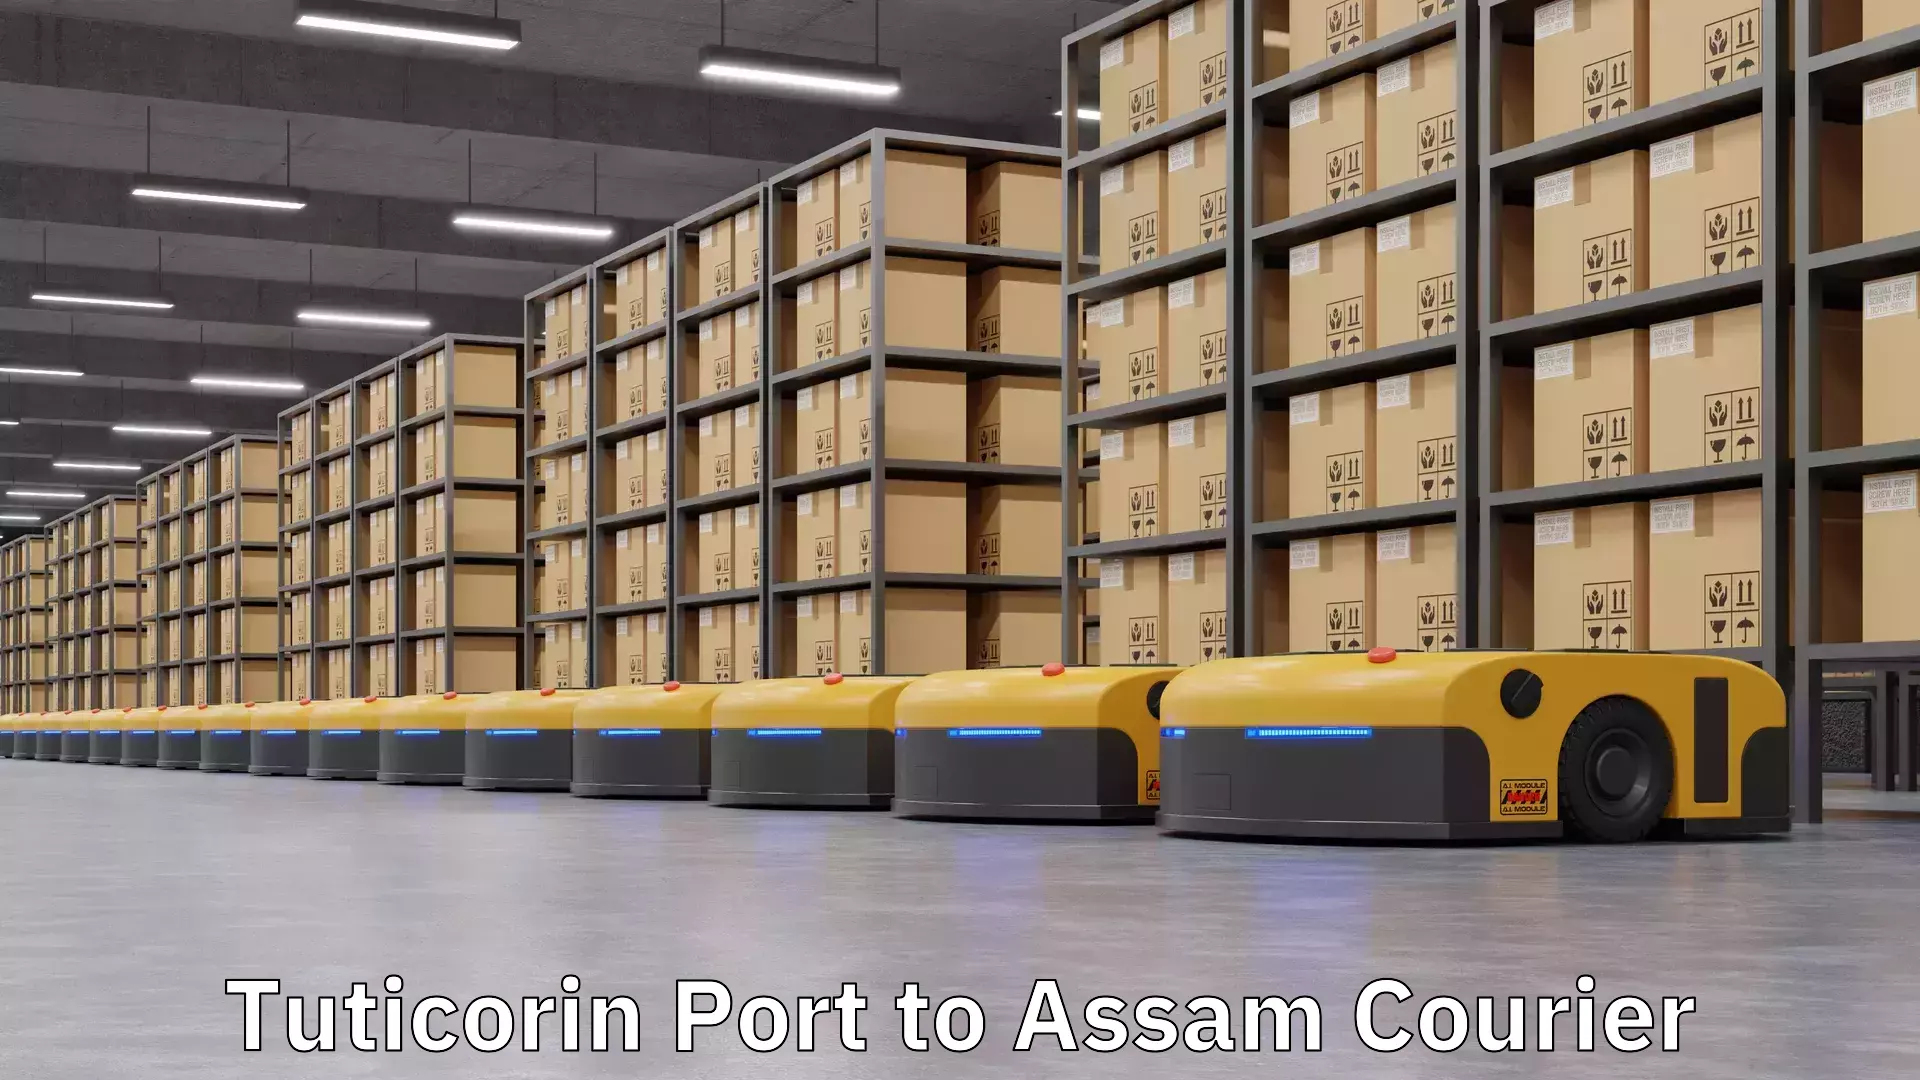 Fast delivery service Tuticorin Port to Assam